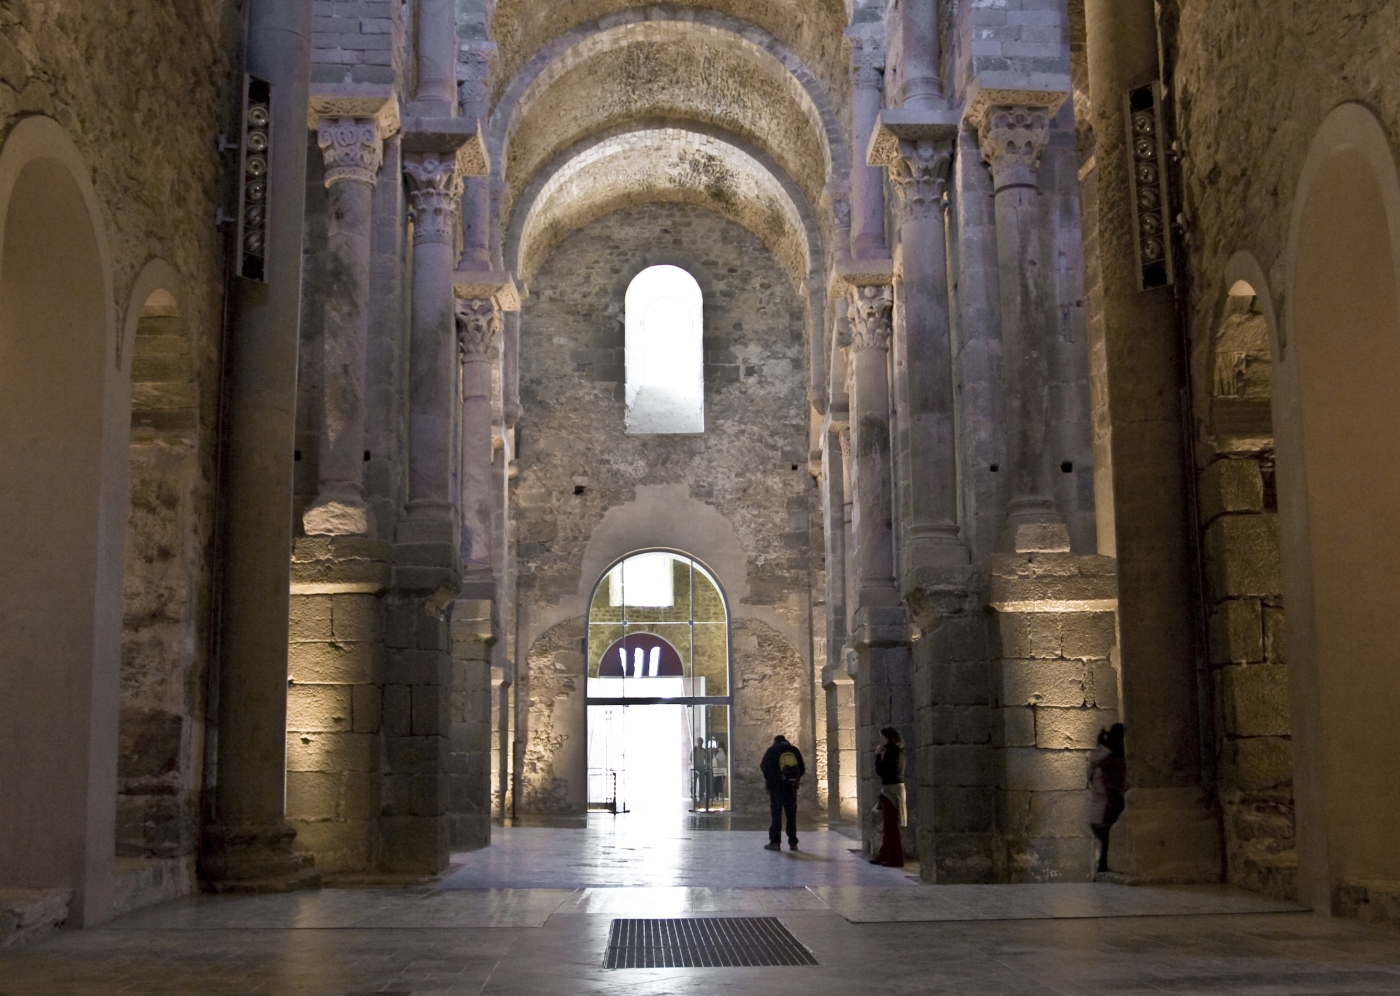 El monasterio de Sant Pere de Rodes, el pasado medieval